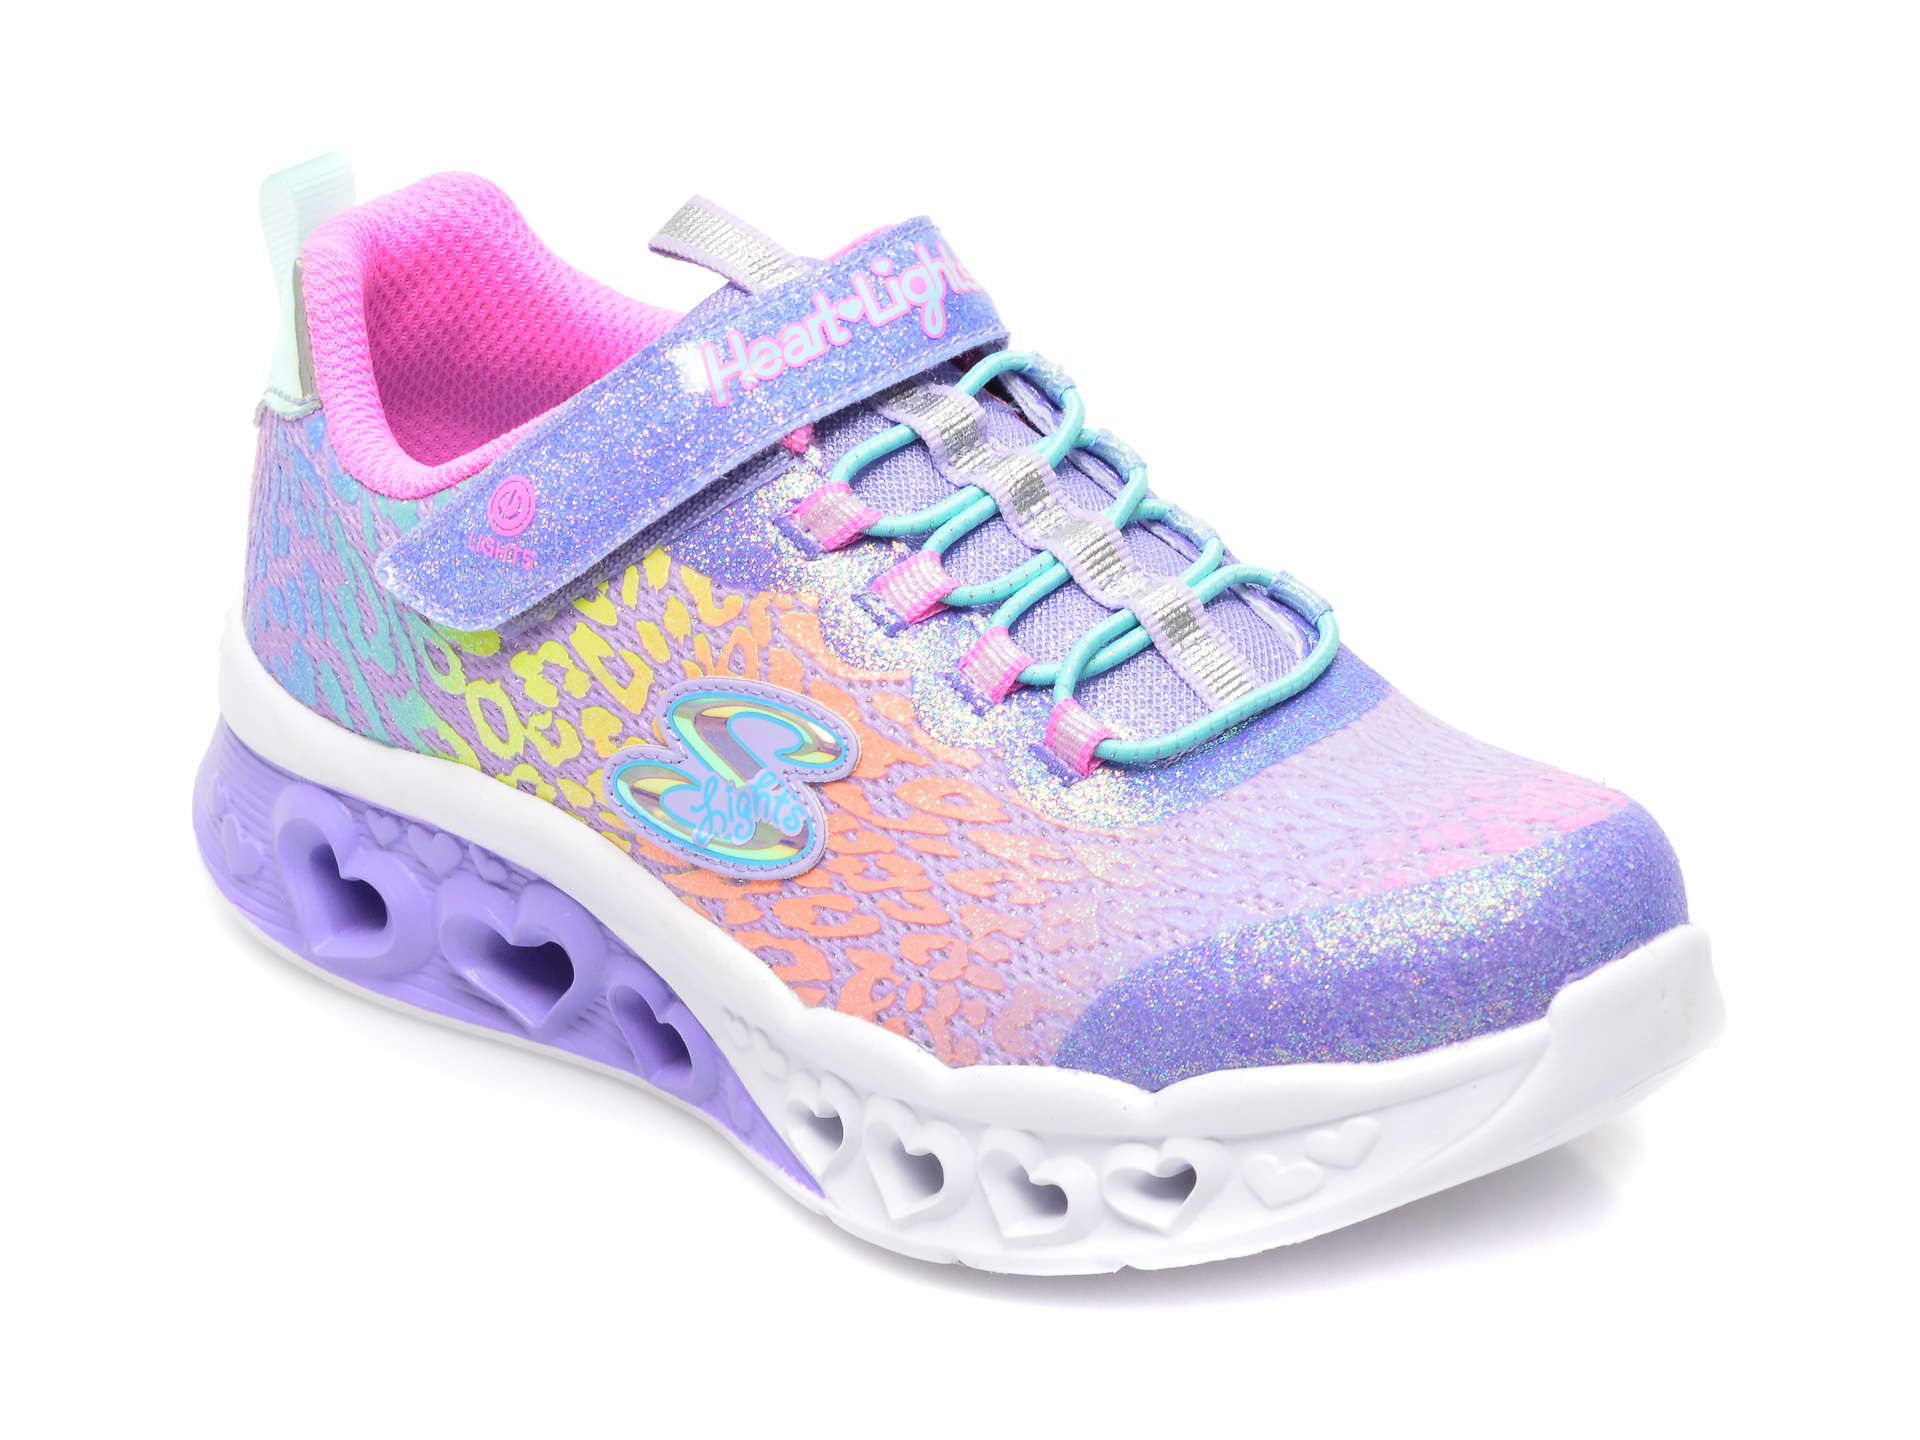 Pantofi sport SKECHERS mov, FLUTTER HEART LIGHTS2314L, din material textil /copii/incaltaminte